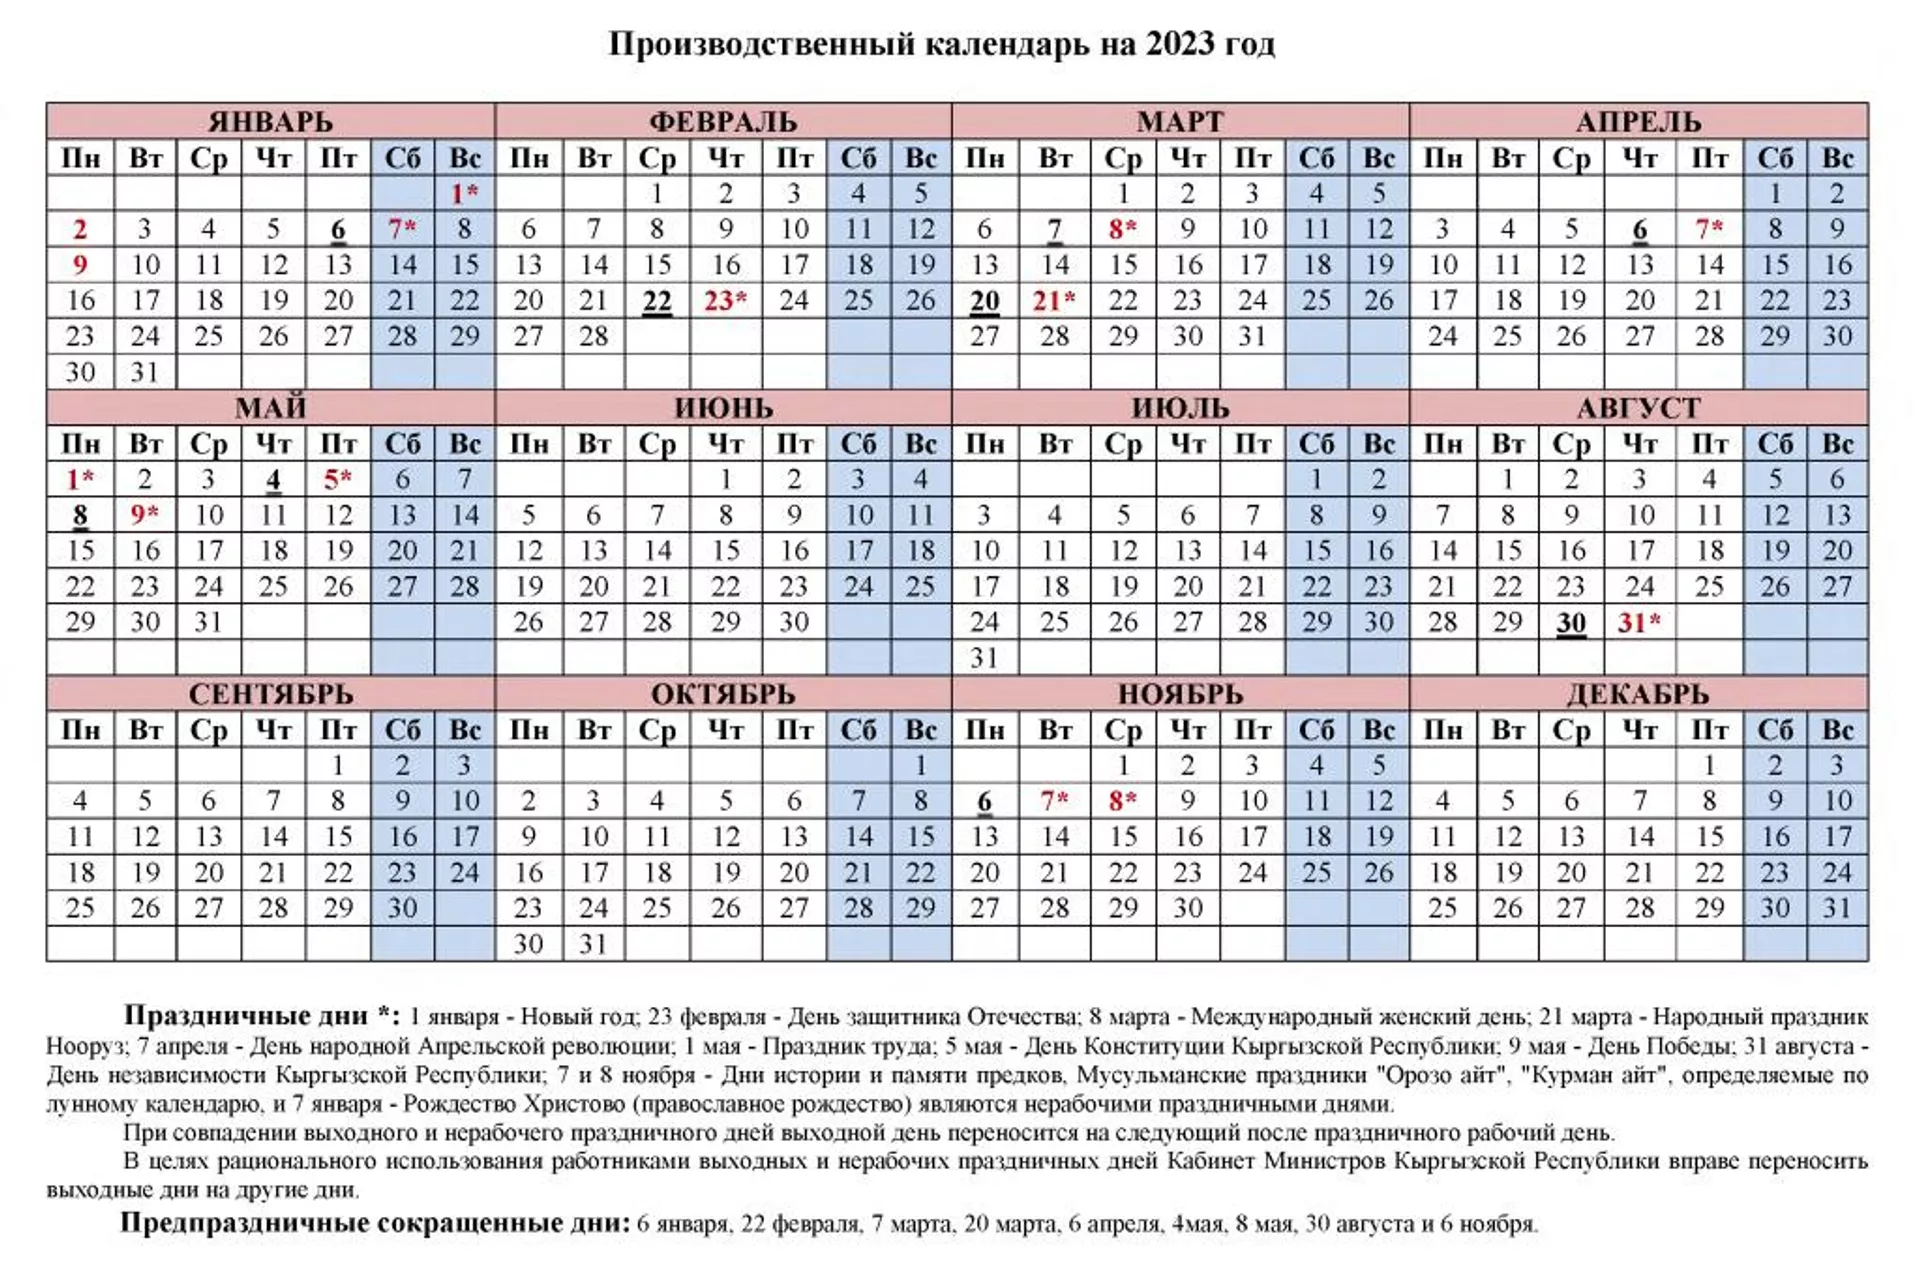 Производственный календарь на 2023 год - Sputnik Кыргызстан, 1920, 31.10.2022